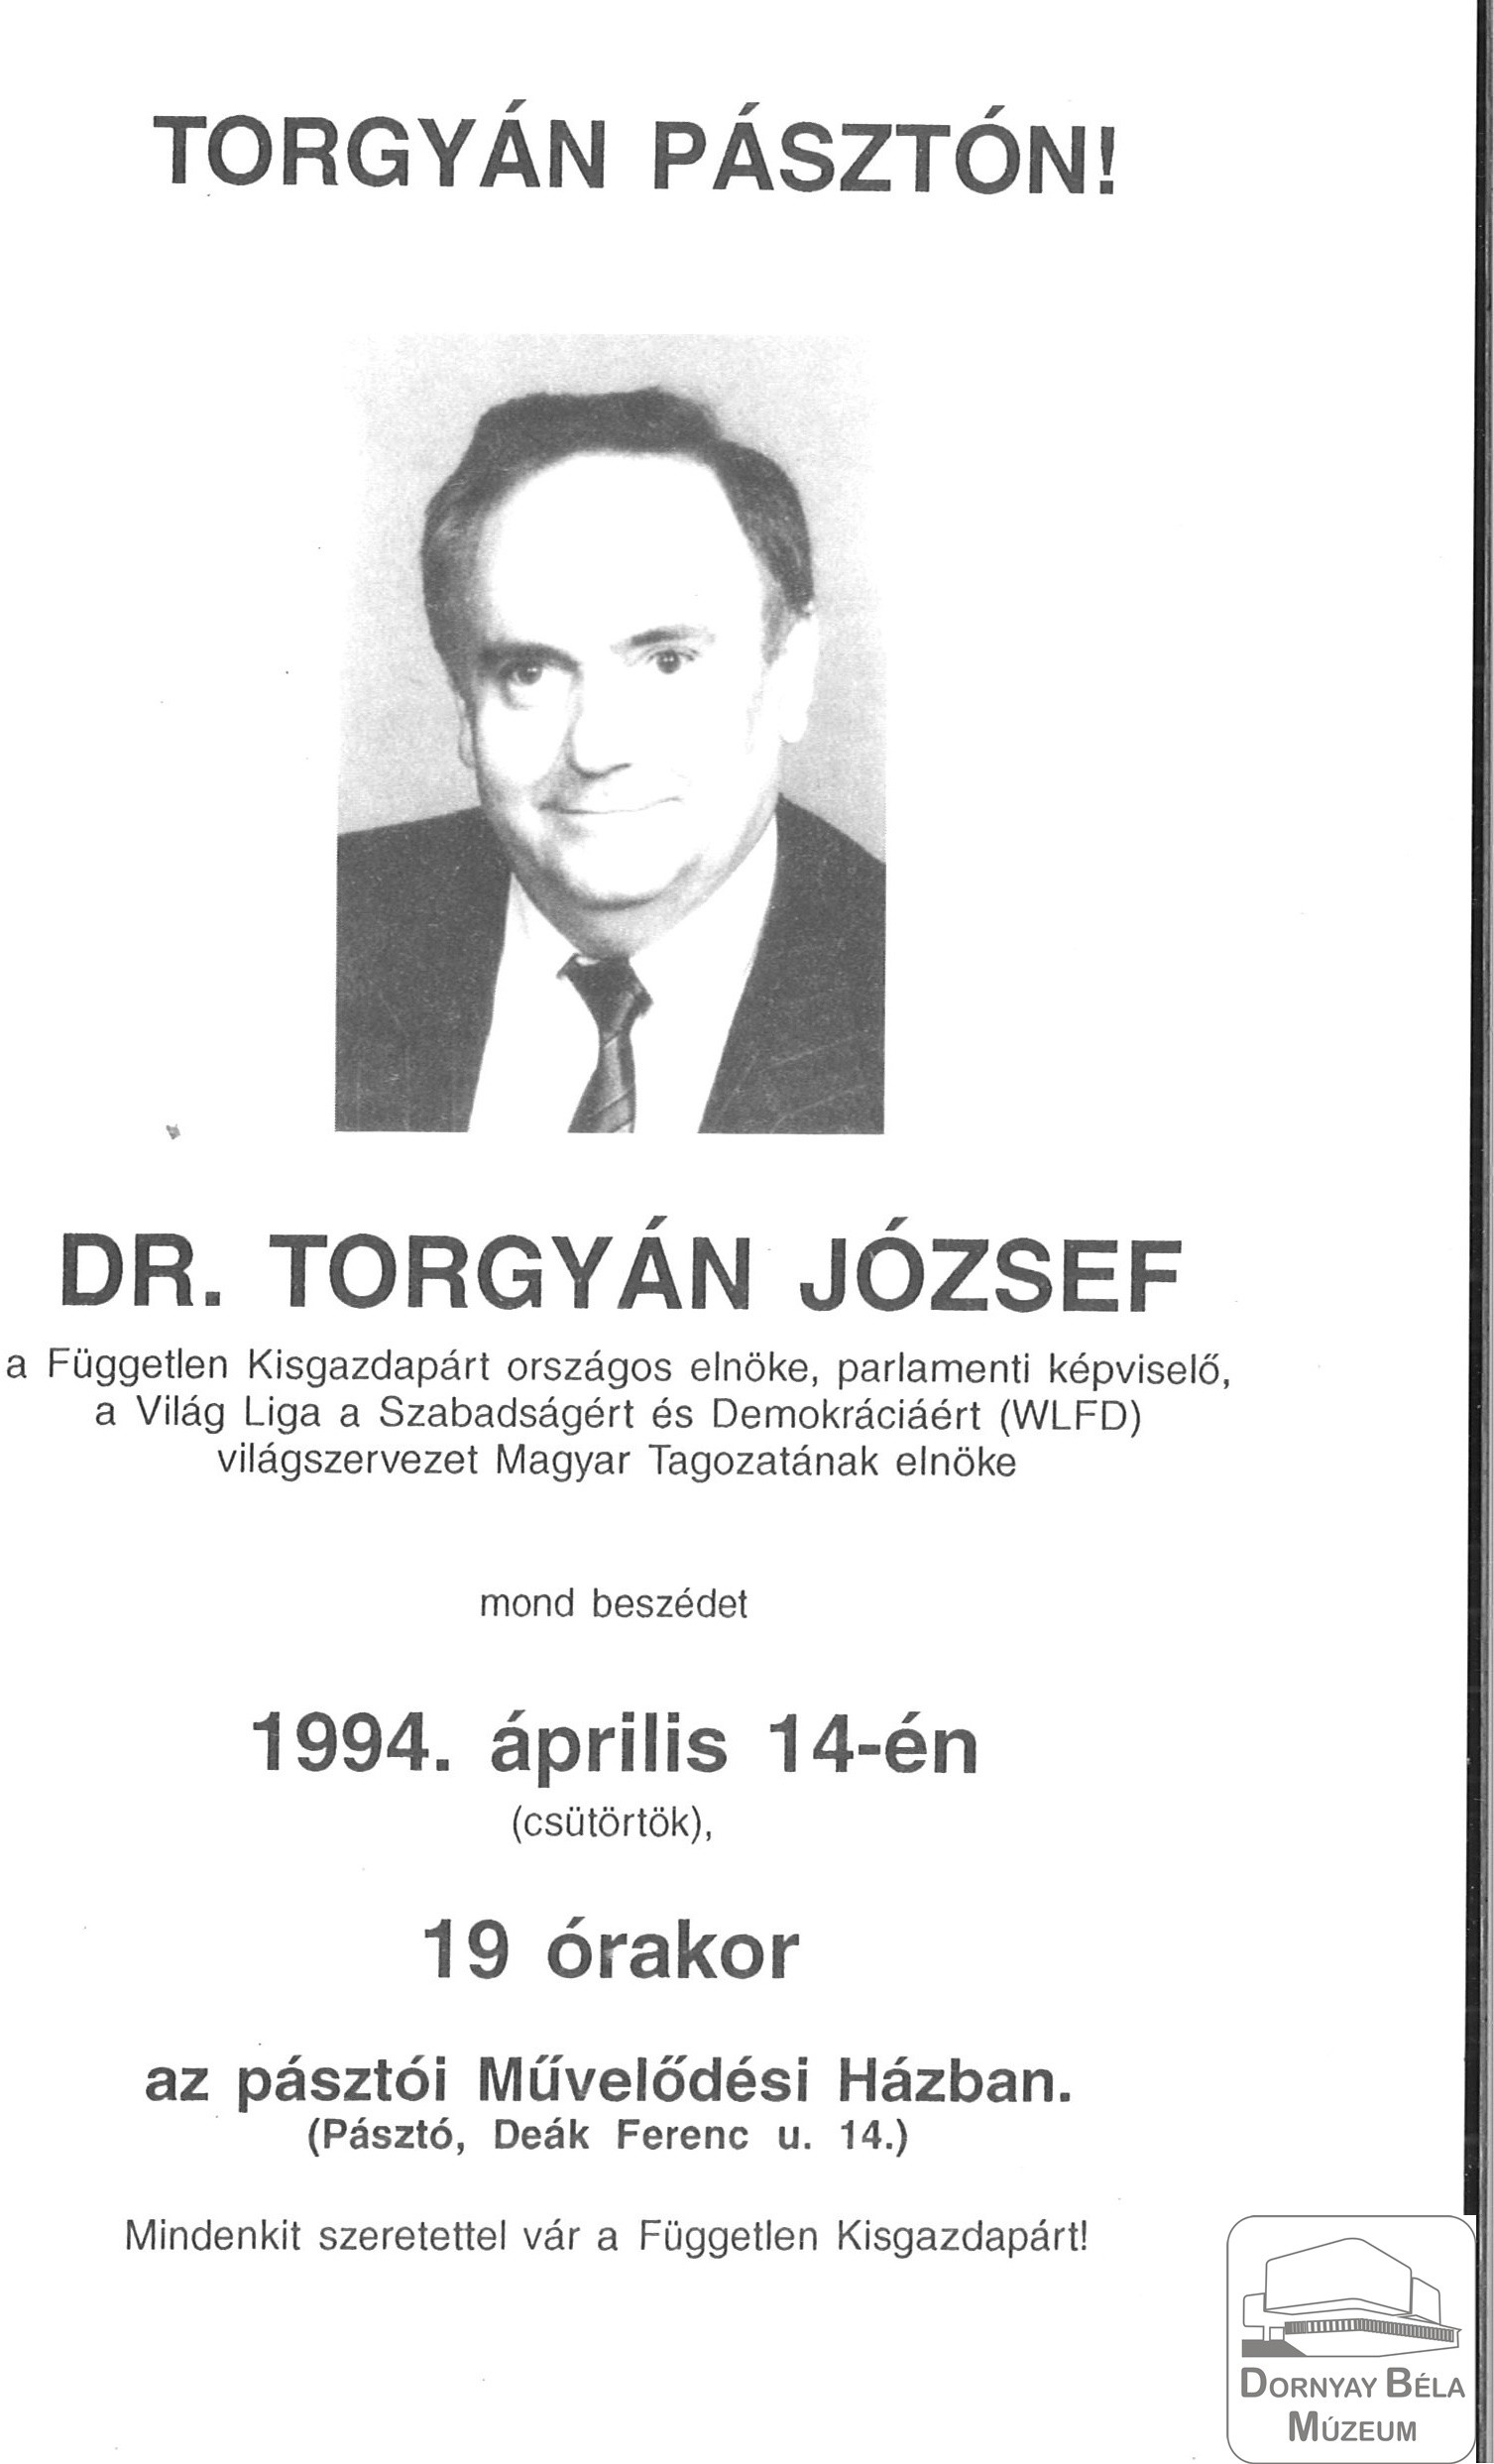 Torgyán Pásztón! (a pártelnök fényképe) (Dornyay Béla Múzeum, Salgótarján CC BY-NC-SA)